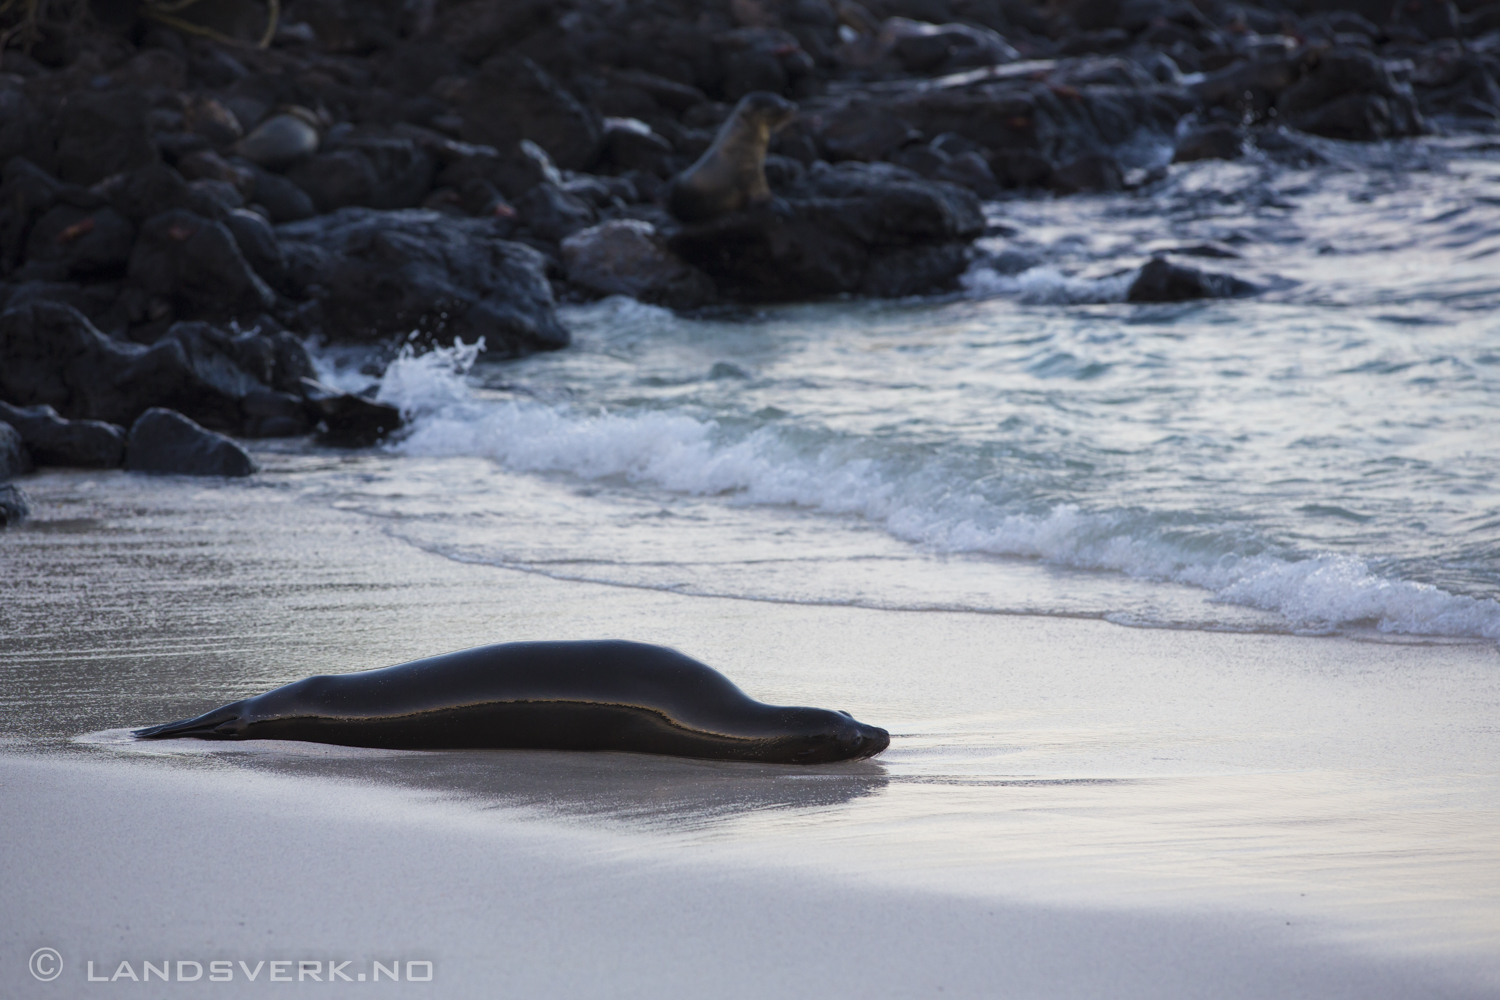 Wild Sea Lion, Islas Plaza, Isla Santa Cruz, Galapagos. 

(Canon EOS 5D Mark III / Canon EF 70-200mm f/2.8 L IS II USM)